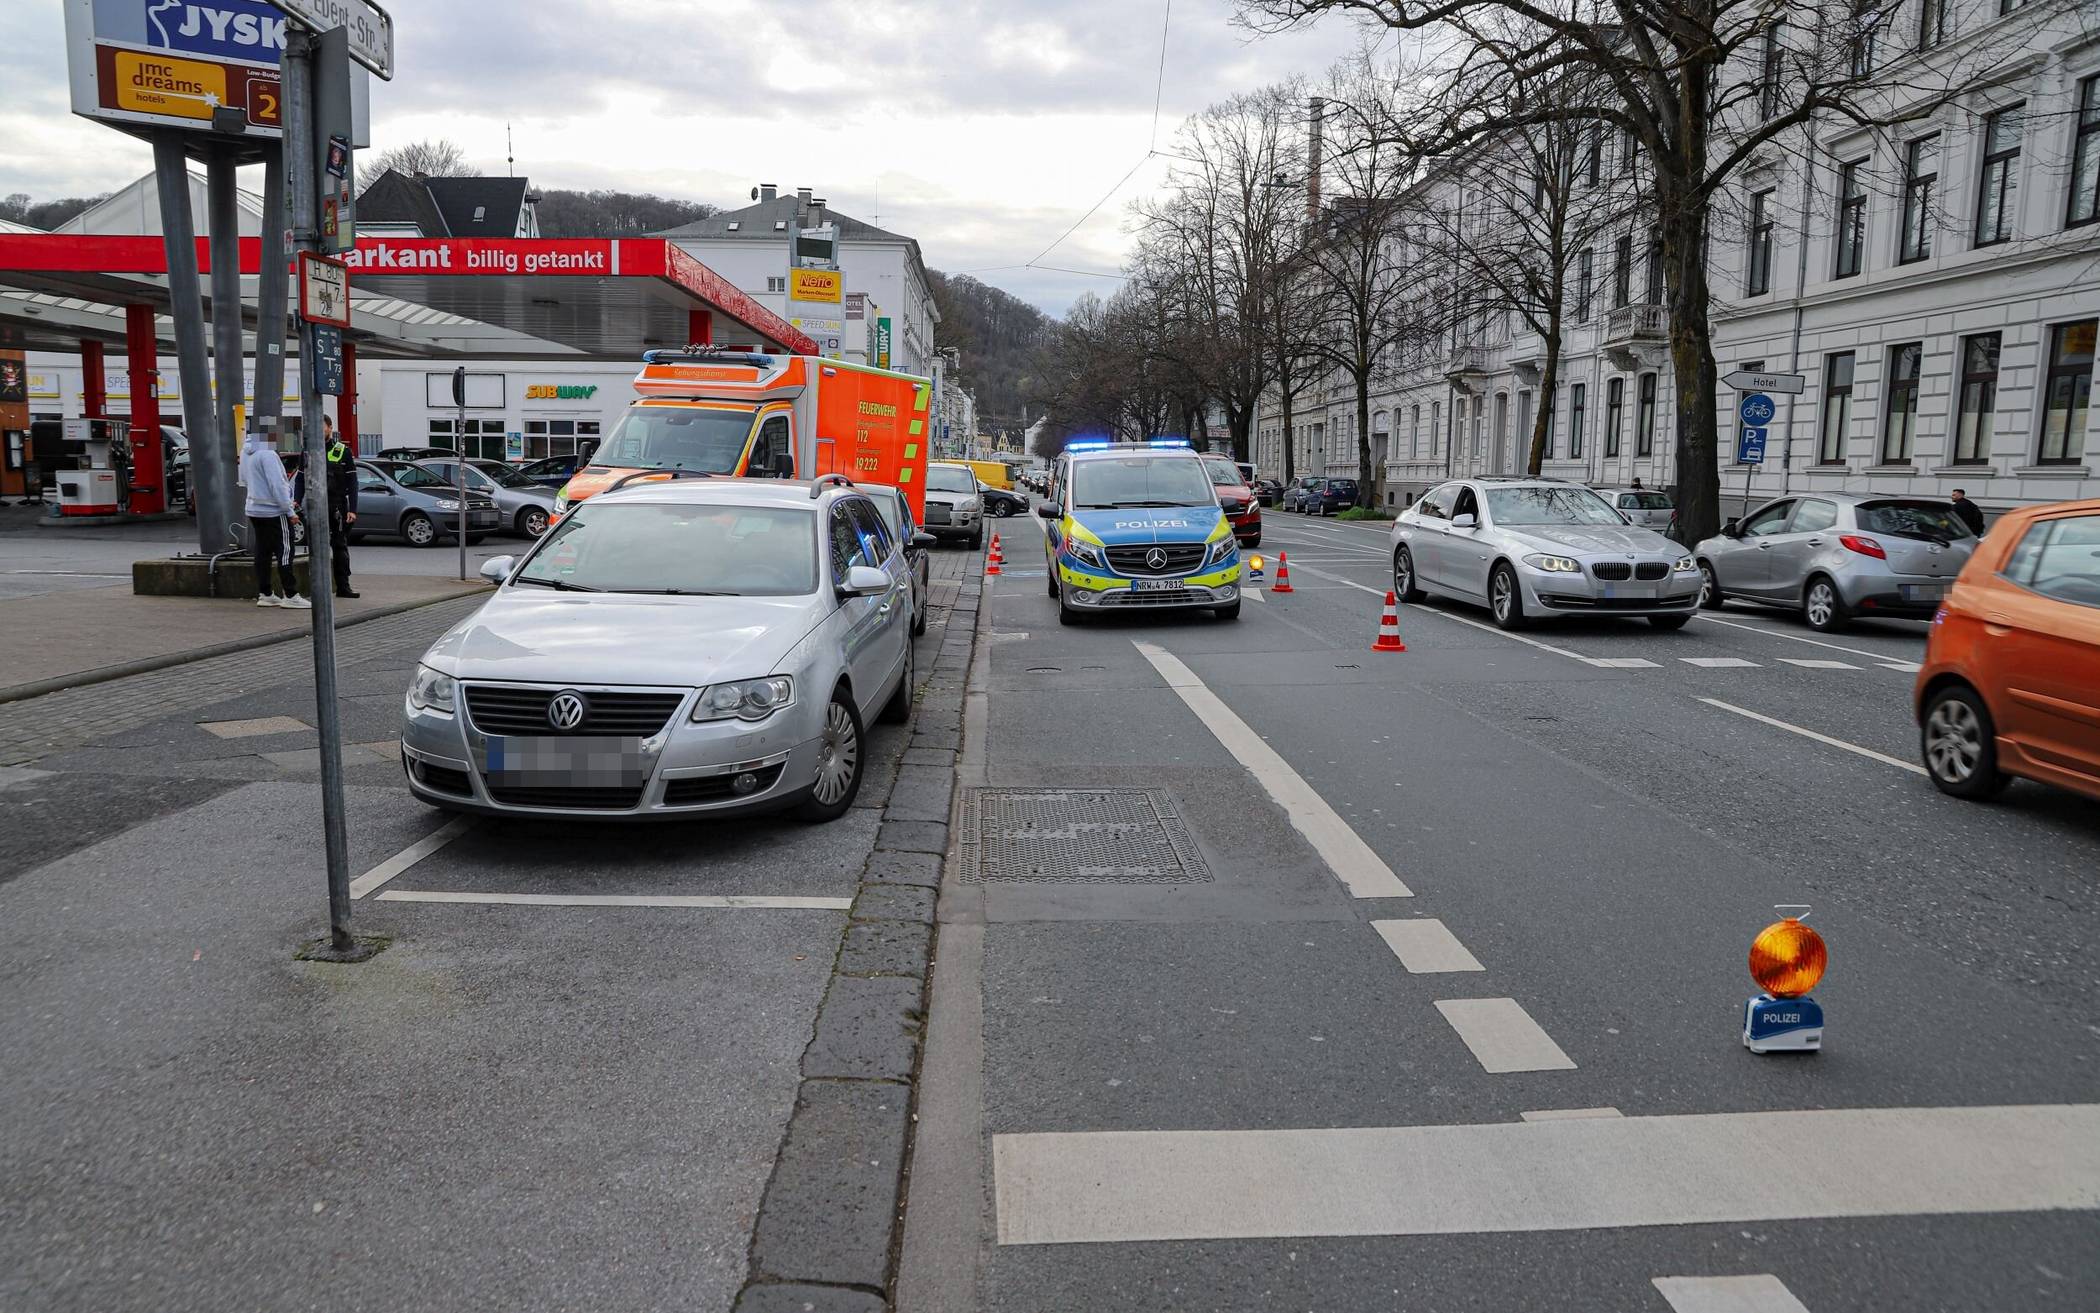 Rollerfahrer auf der Wuppertaler B7 verletzt​